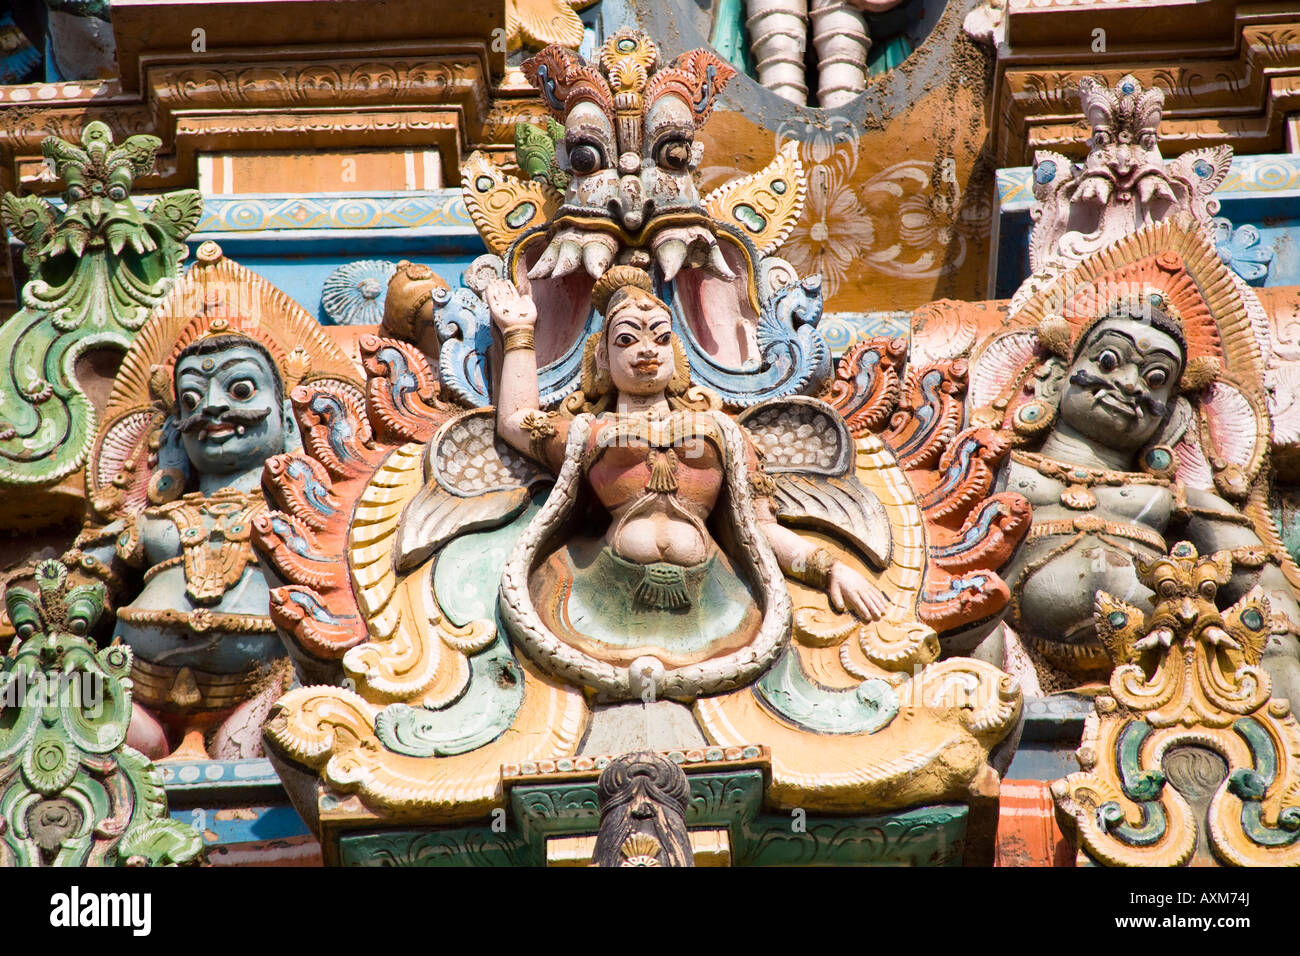 Carved Hindu figures on a gopuram, Meenakshi Temple, Madurai, Tamil Nadu, India Stock Photo